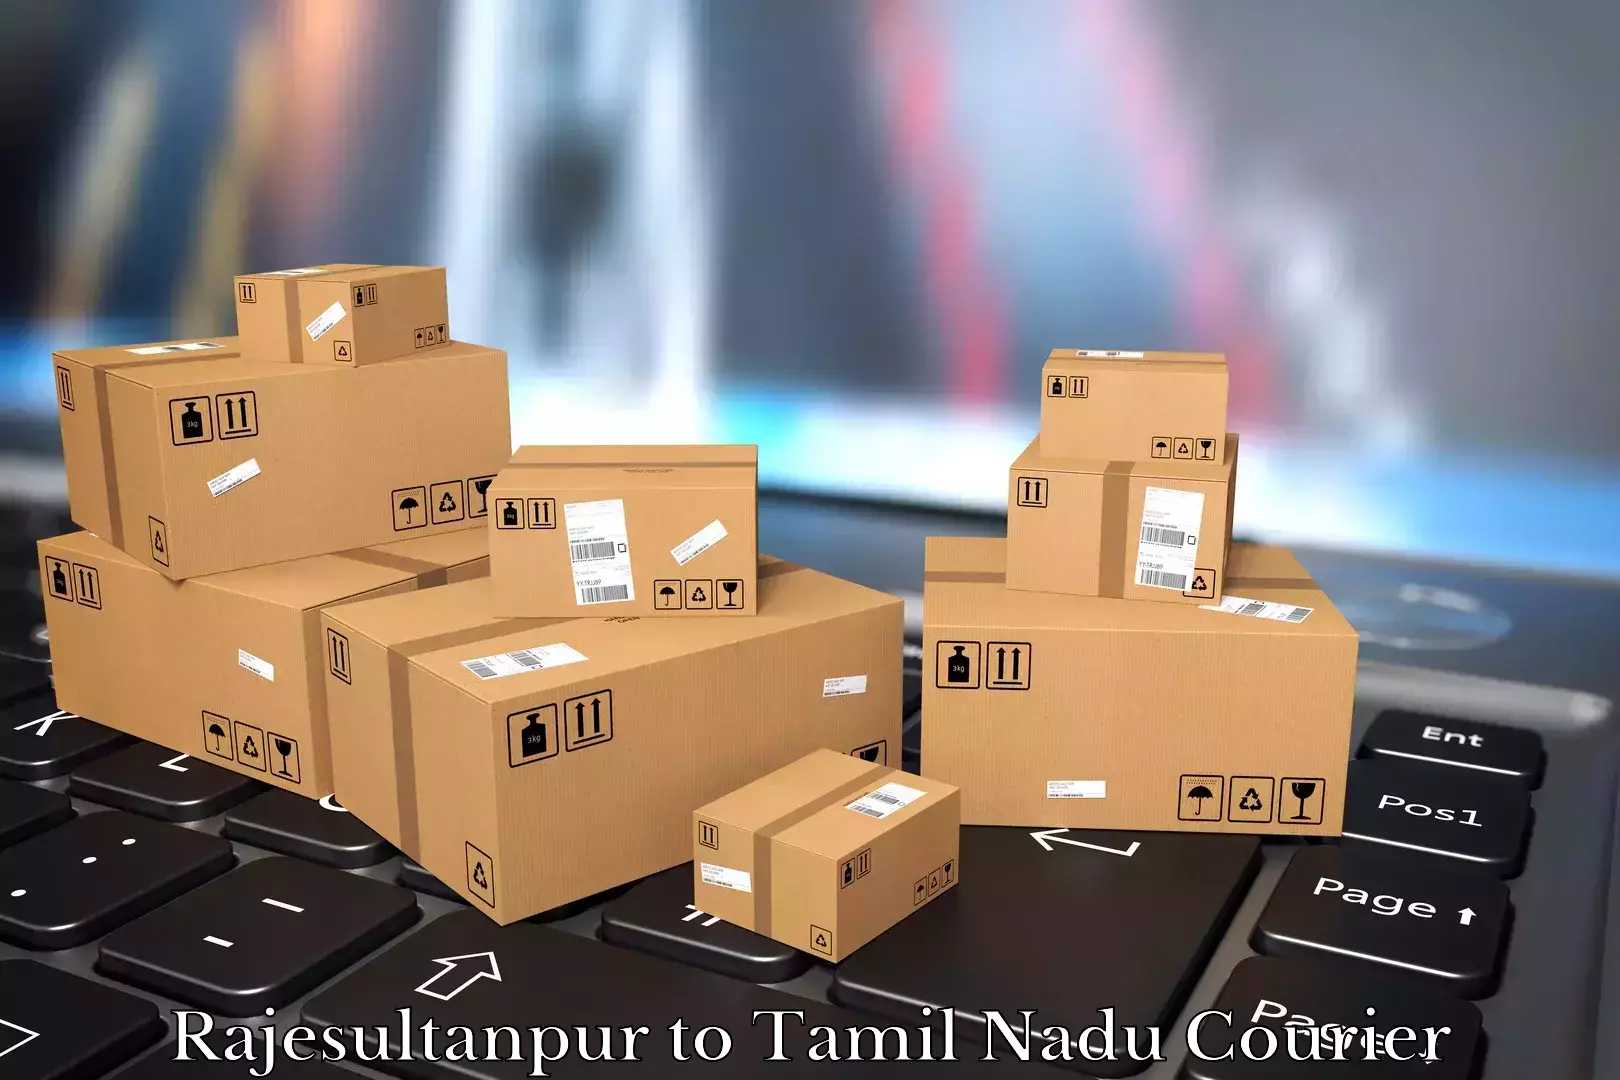 Moving and storage services Rajesultanpur to Tiruturaipundi